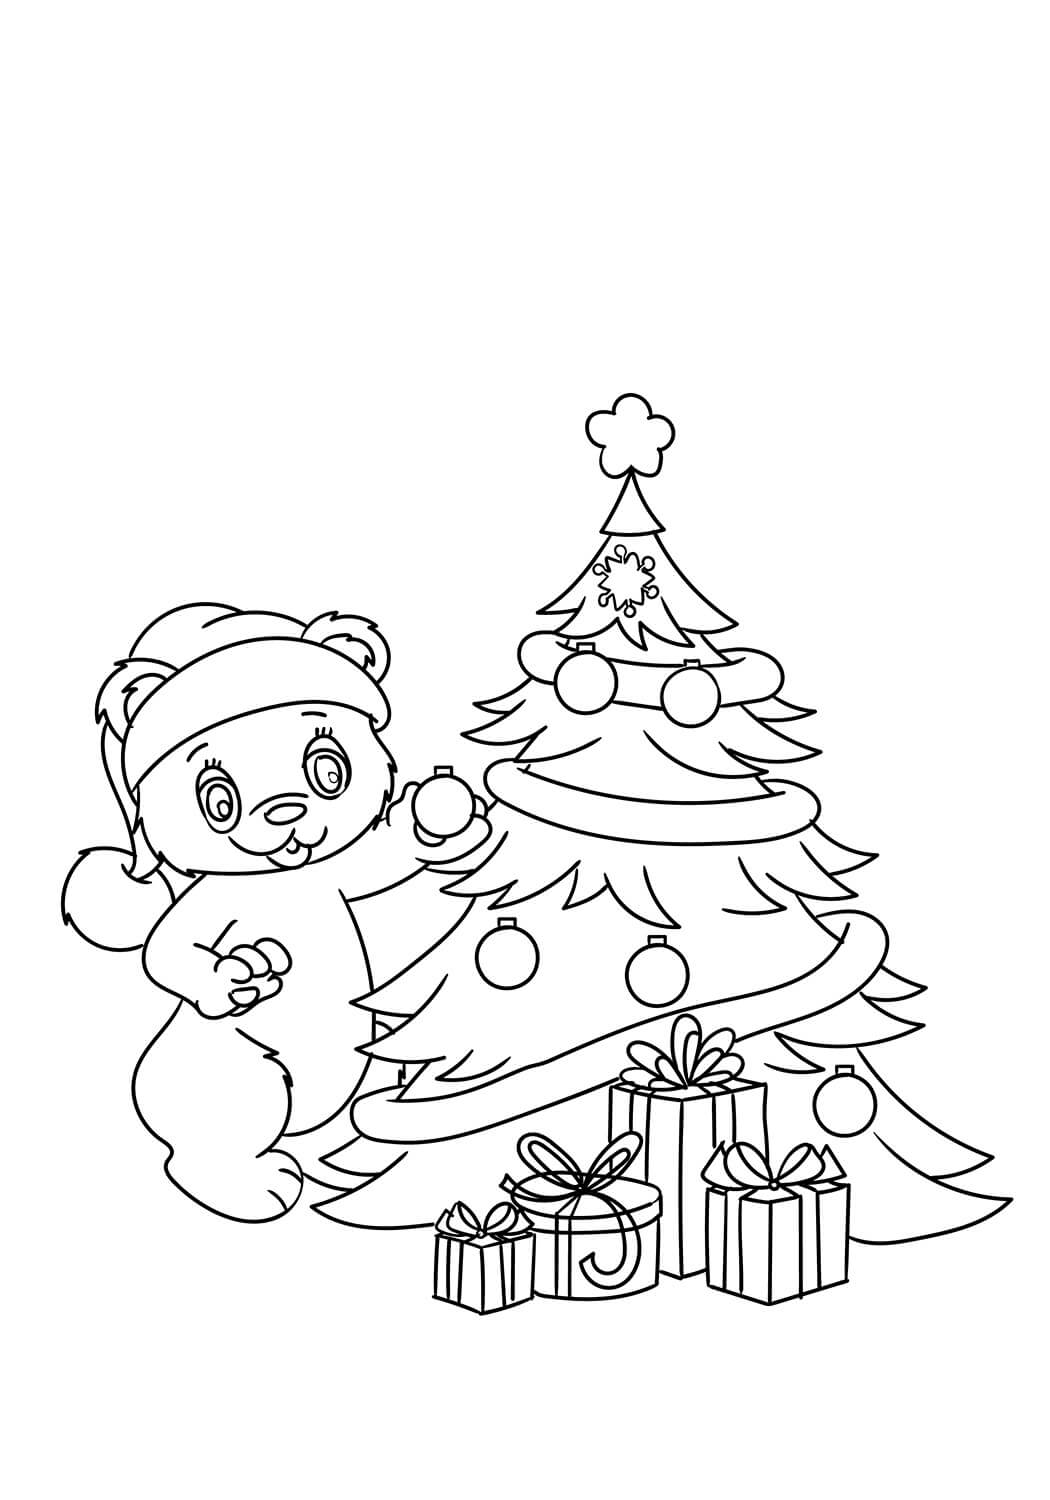 Dibujos de Teddy decorando el árbol de Navidad para colorear